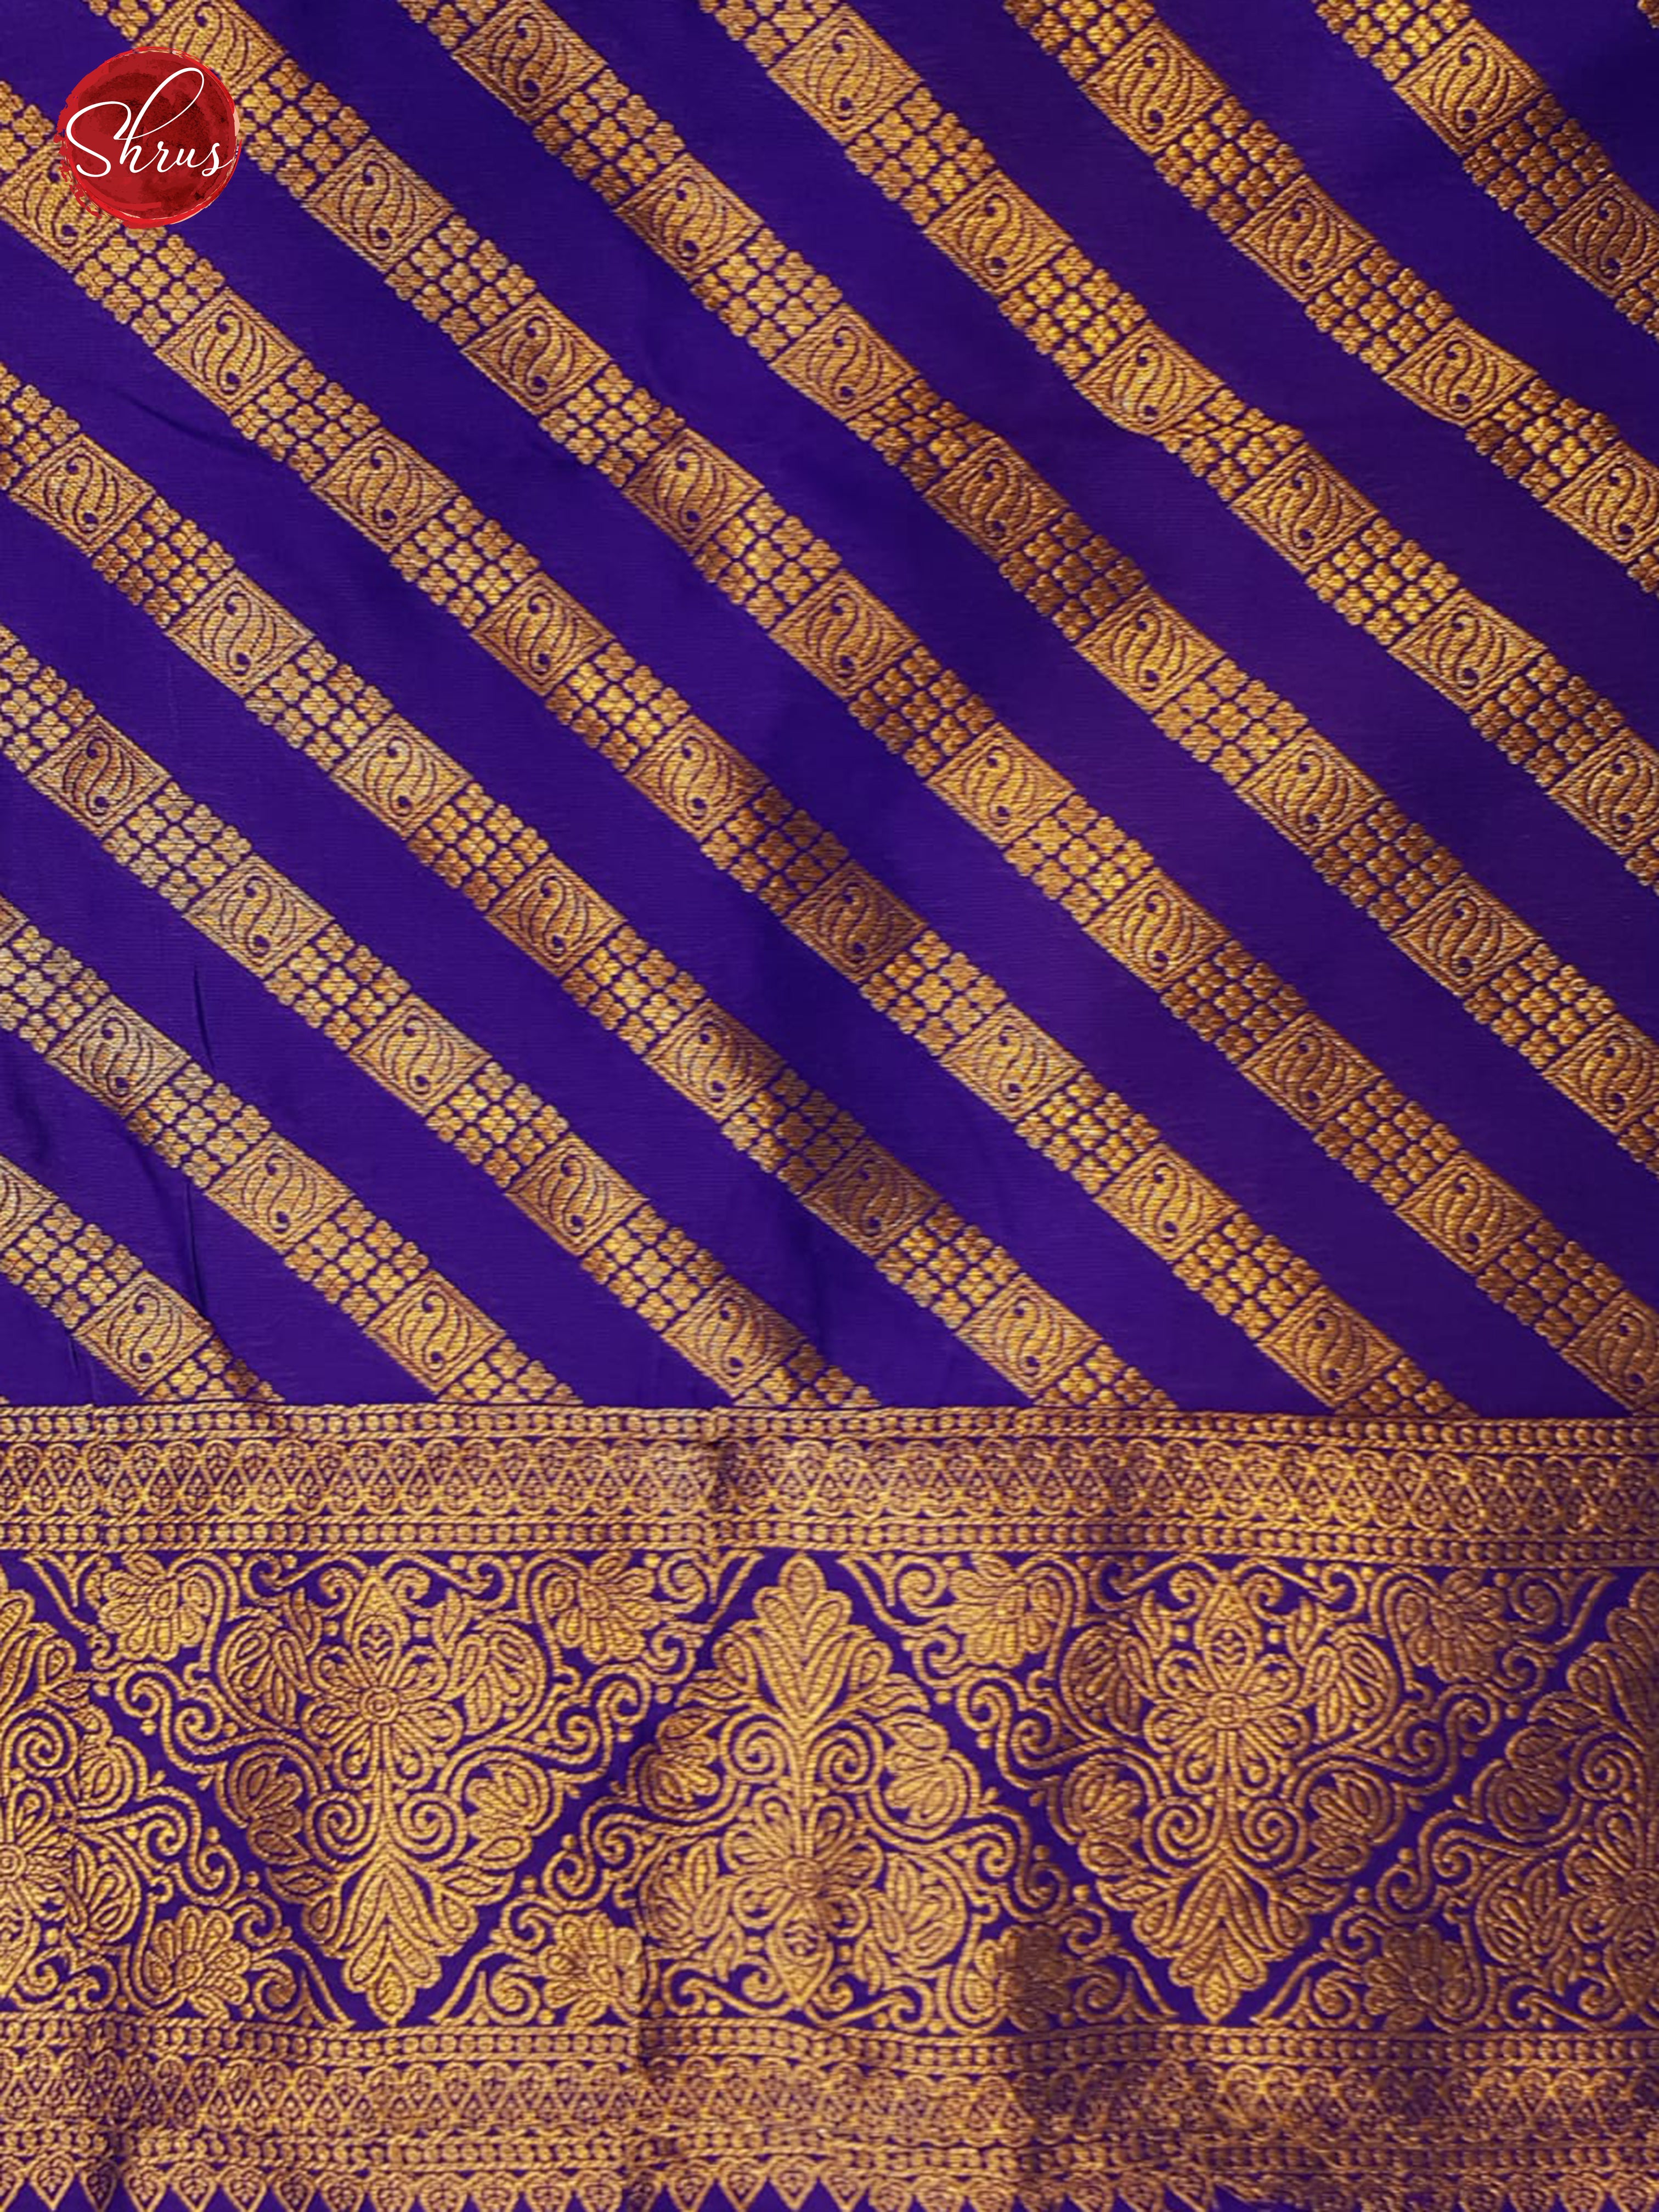 Purple(Single Tone) - Semi kanchipuram saree - Shop on ShrusEternity.com